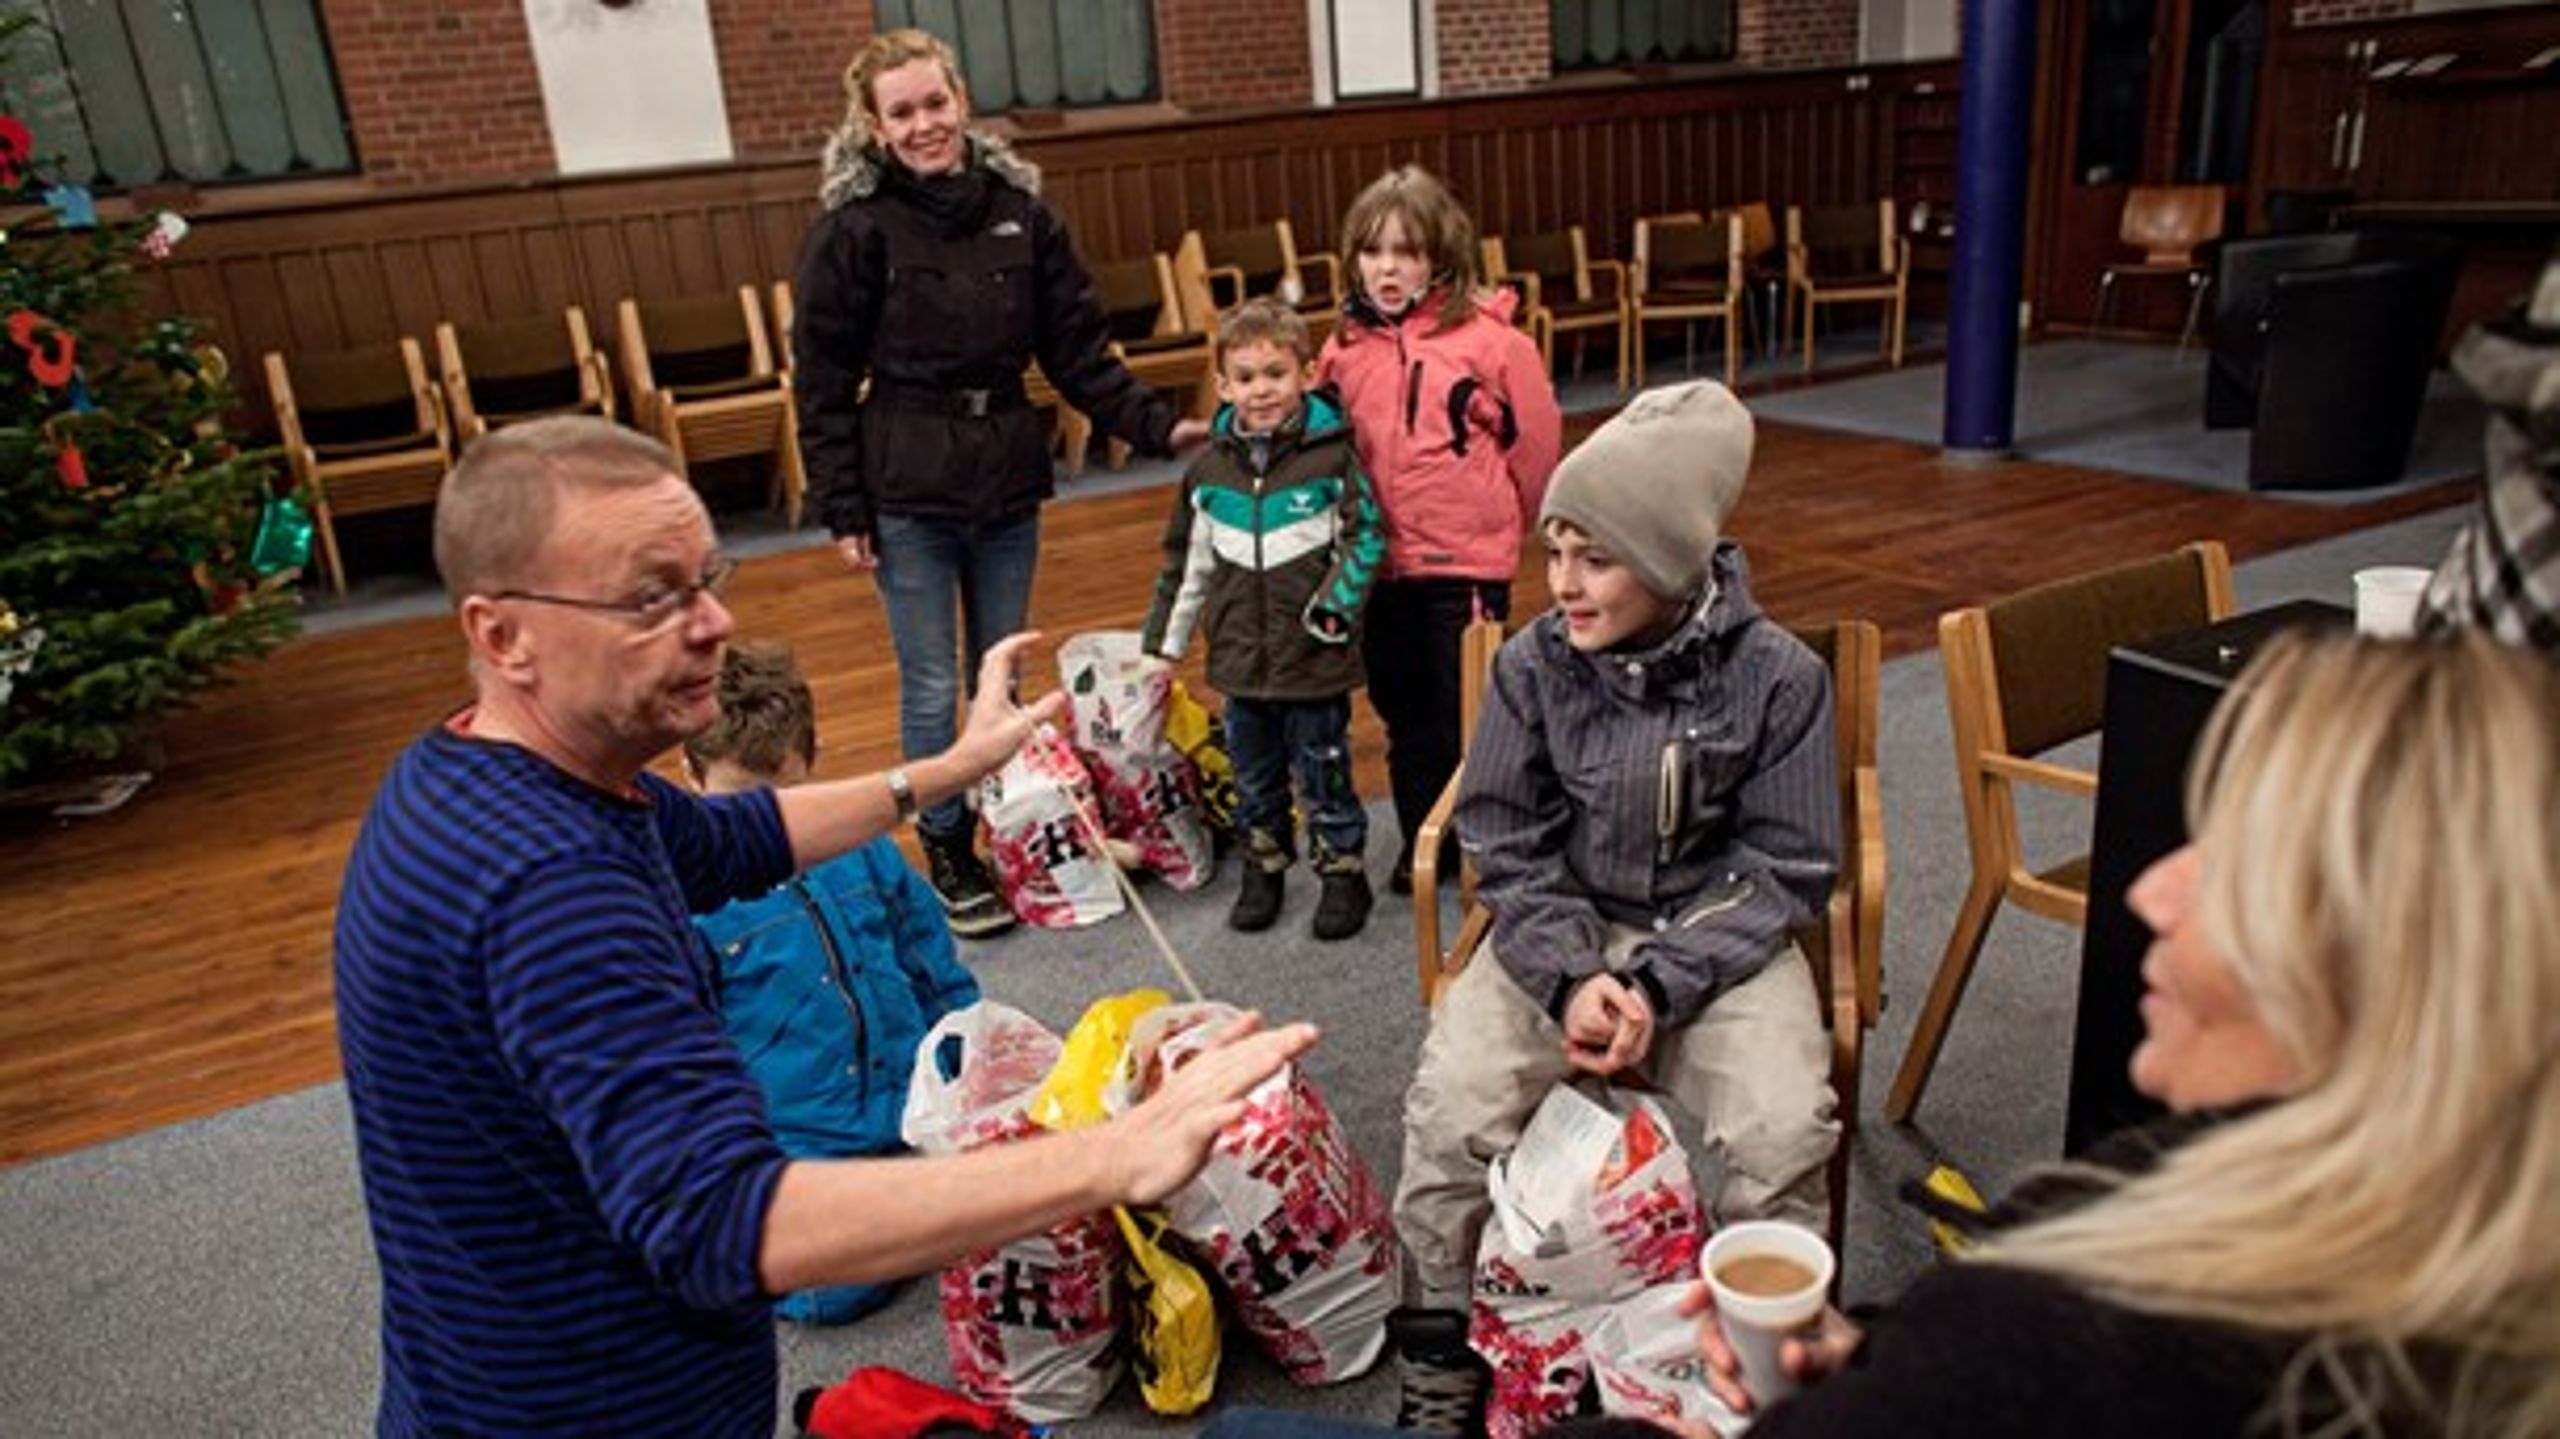 Julehjælp uddeles på Nørrebro.&nbsp;Antallet af
fattige børn er steget med 20.000 på bare to år, og der skal gøres op med denne skævhed, skriver Per Christensen fra 3F. (Arkivfoto).